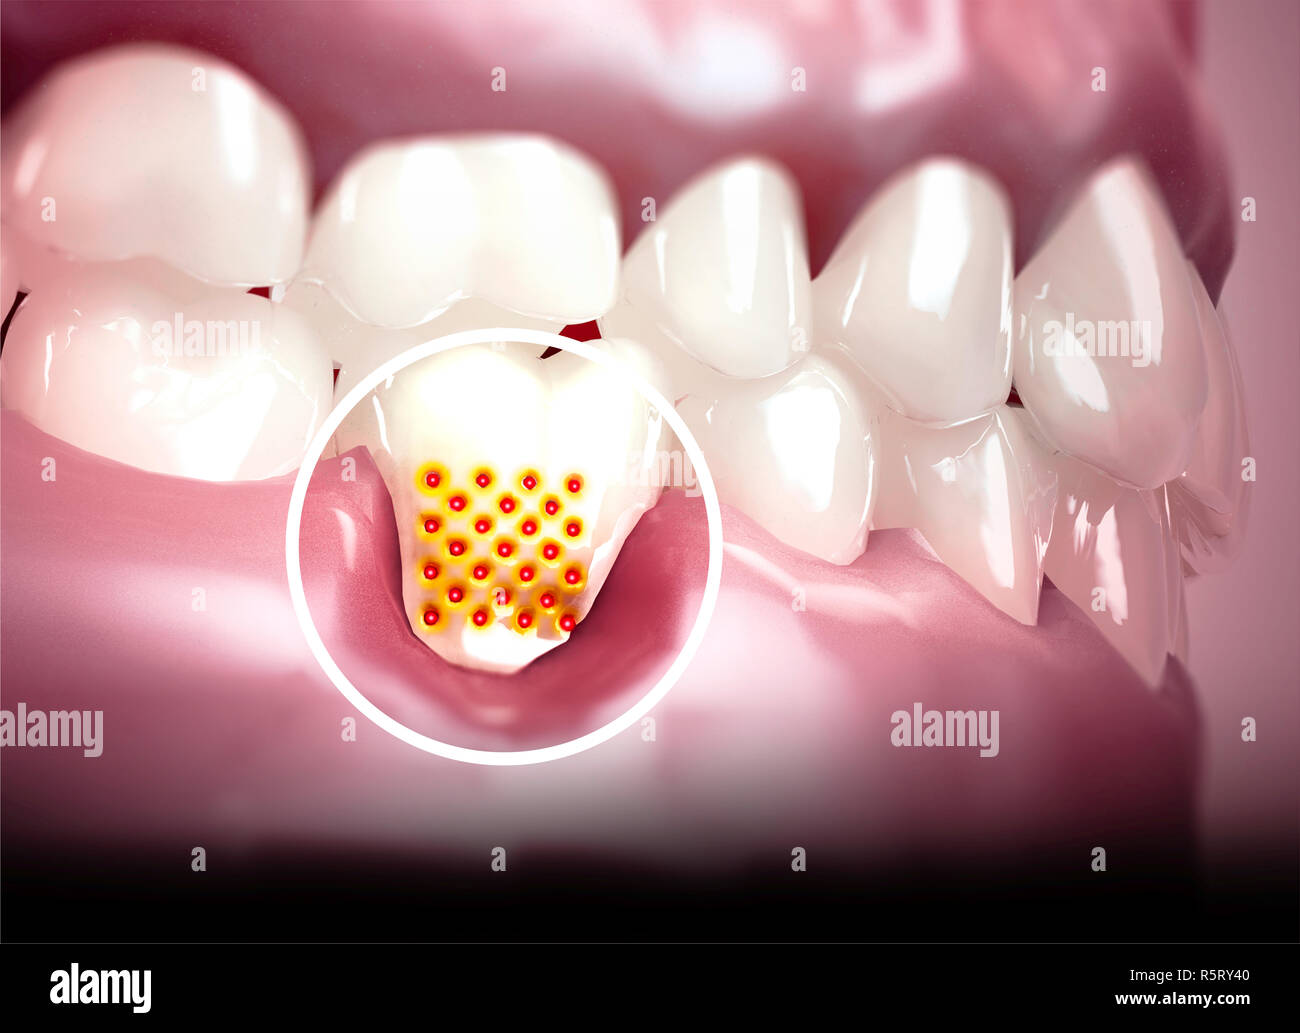 La bouche, des dents, des gencives. Dents sensibles, retrait de la gencive.  La sensibilité dentaire. Laboratoire dentaire. Le rendu 3D Photo Stock -  Alamy